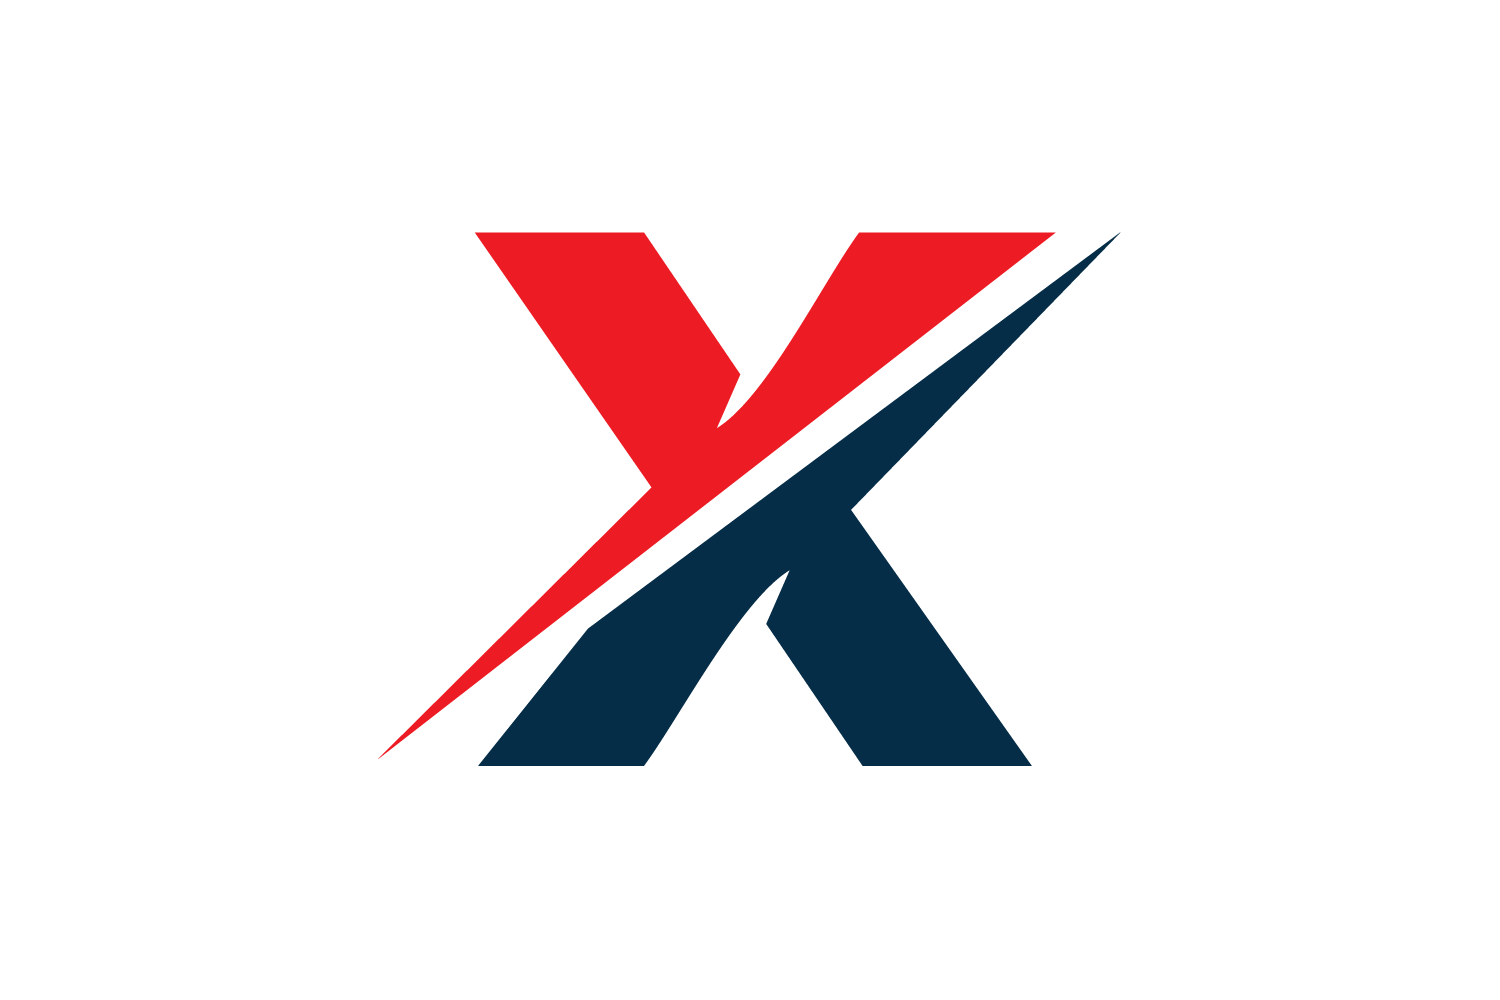 X logo png. Логотип x. Логотип с буквой х. Дизайн буквы x. Стилизованная буква х.